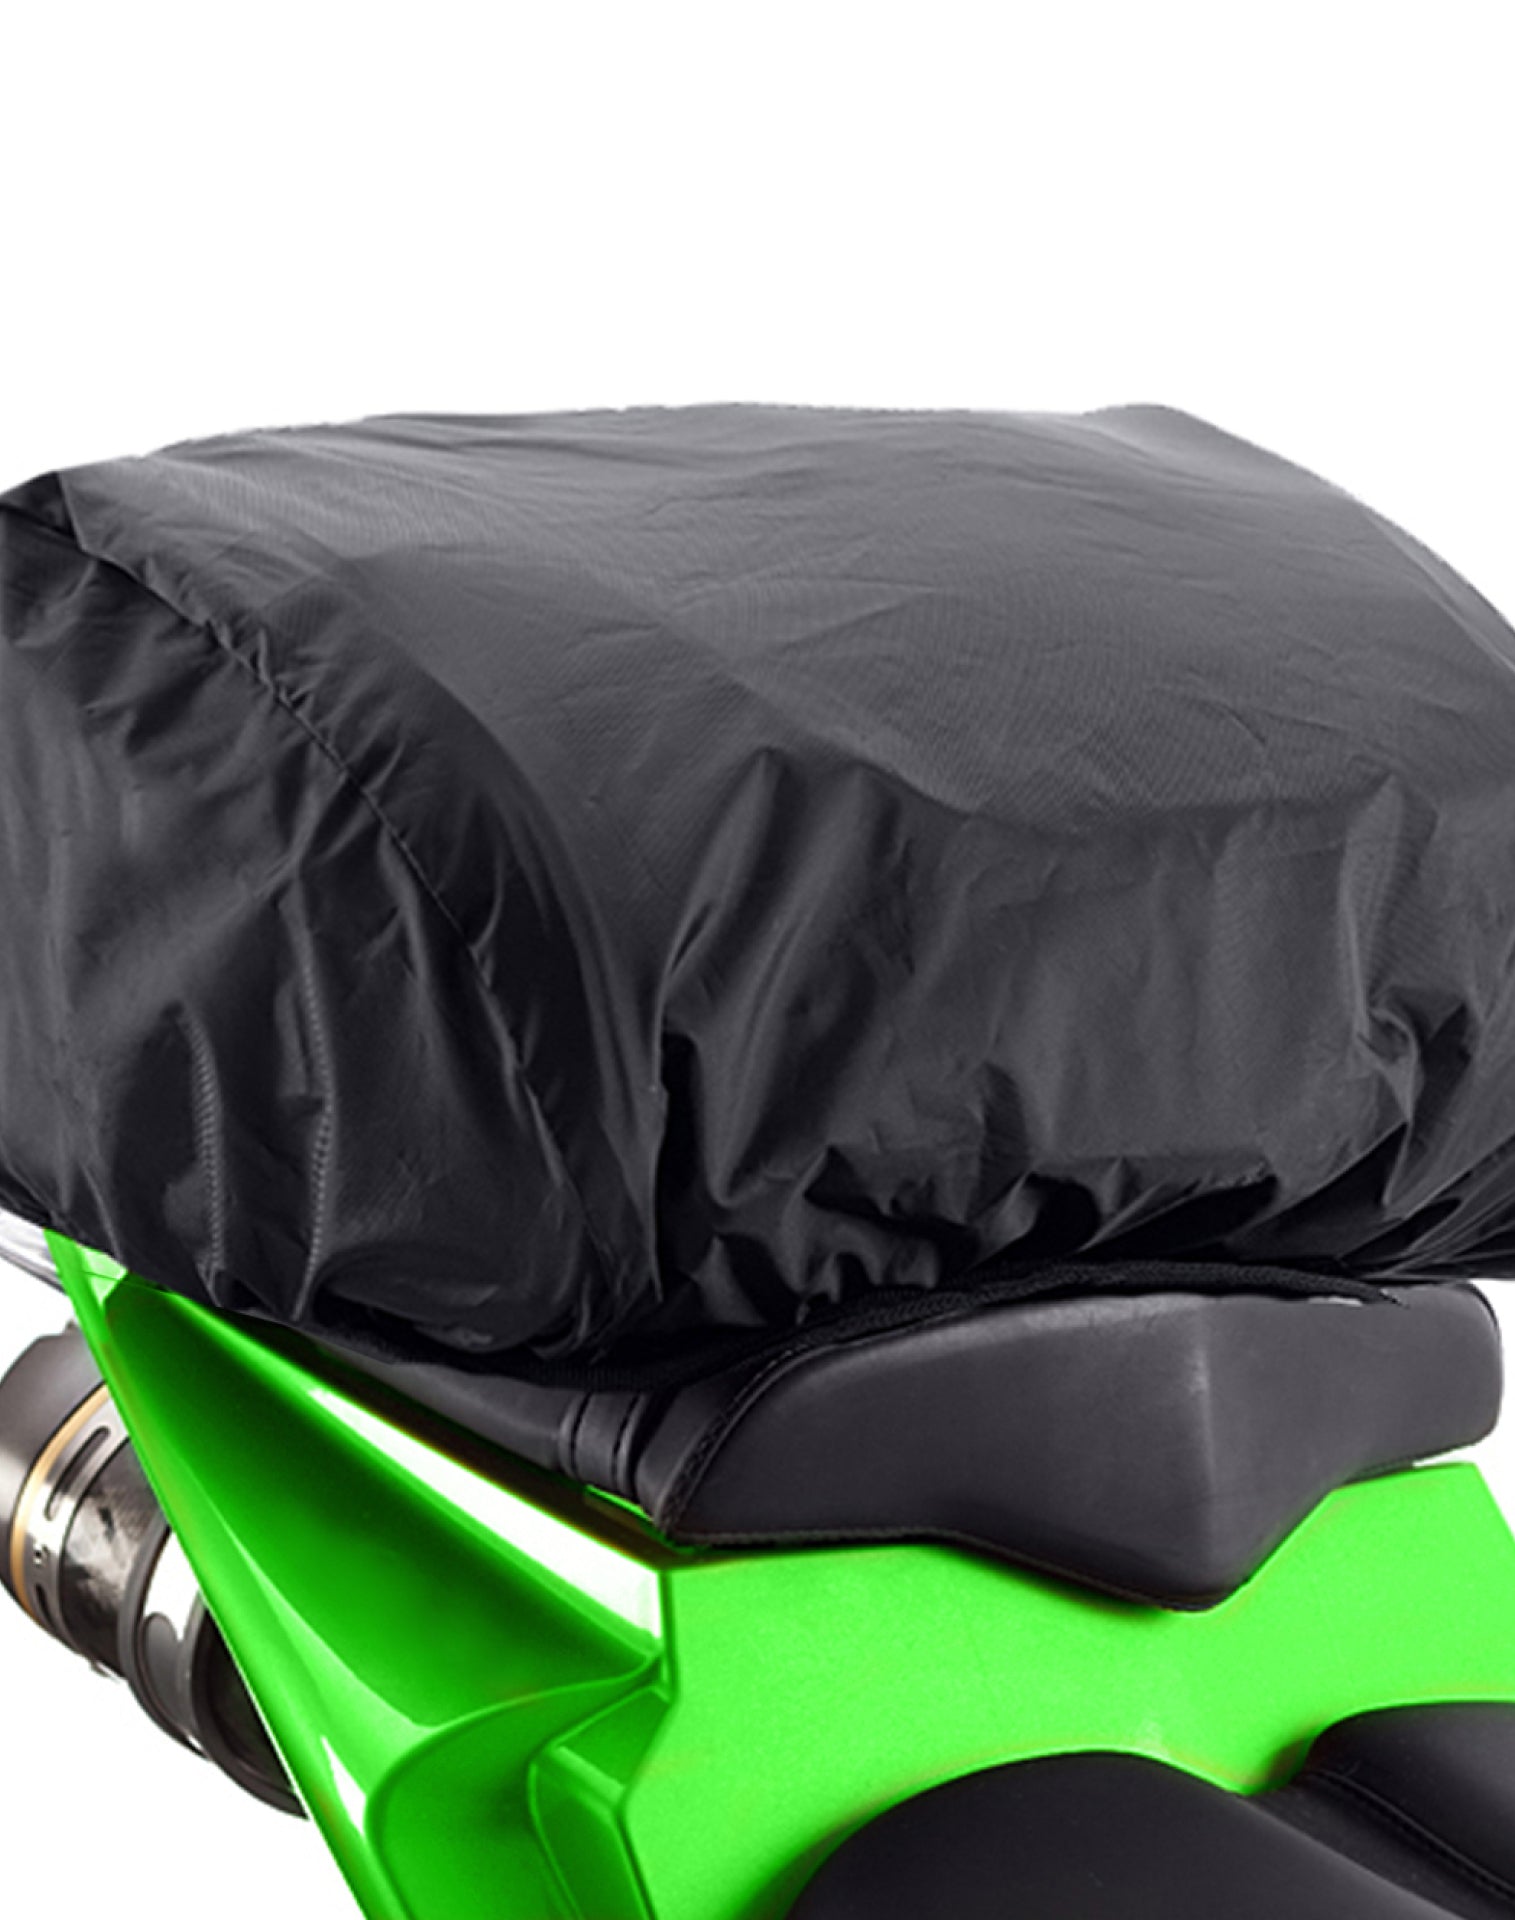 Viking AXE Small Honda Motorcycle Tail Bag Durable